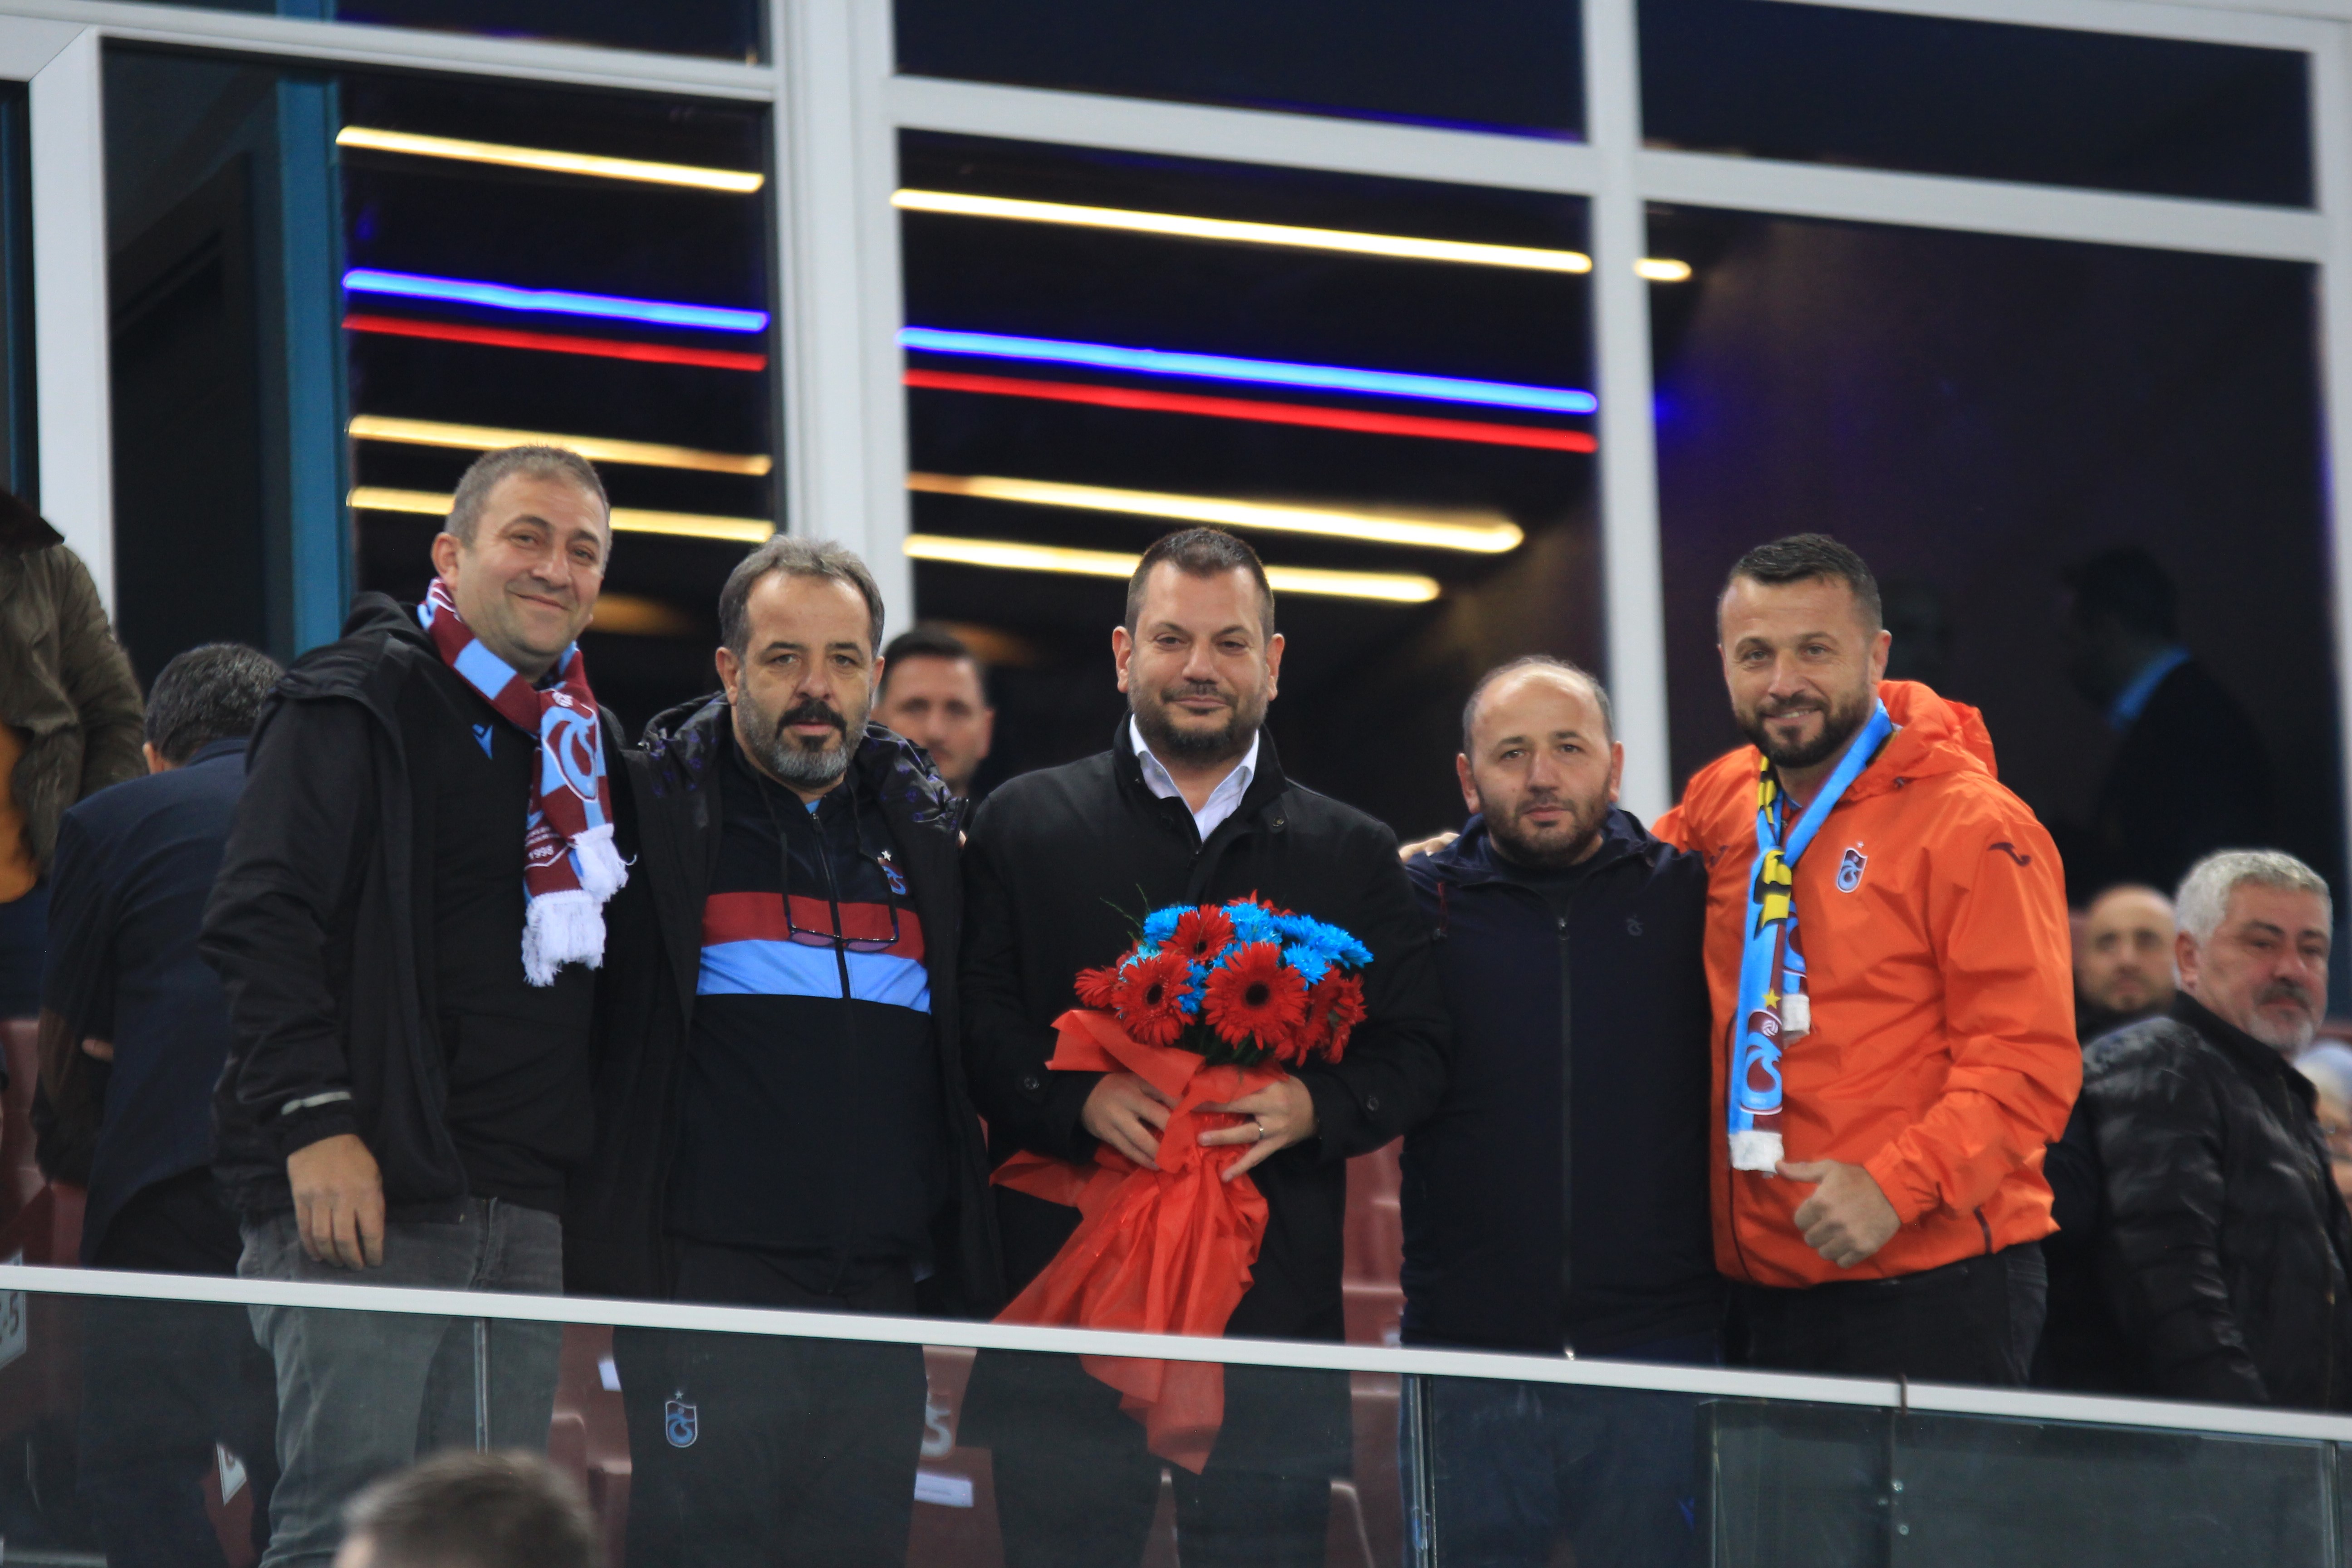 Trabzonspor sahasında Konyaspor’u 2-1 mağlup etti.